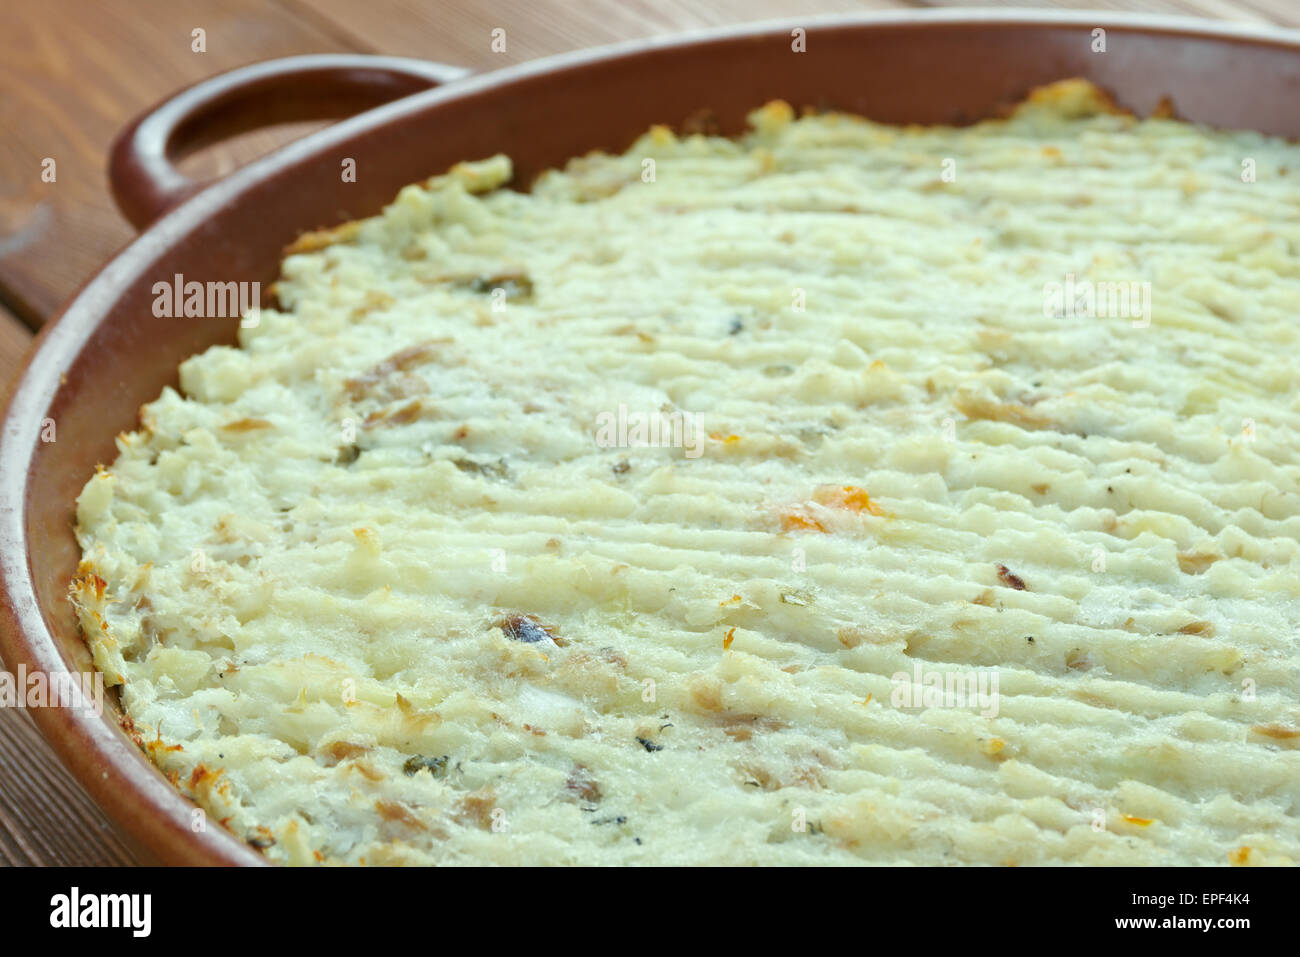 Brandade - Emulsione di baccalà con patate.tradizionale in Spagna e Francia Foto Stock